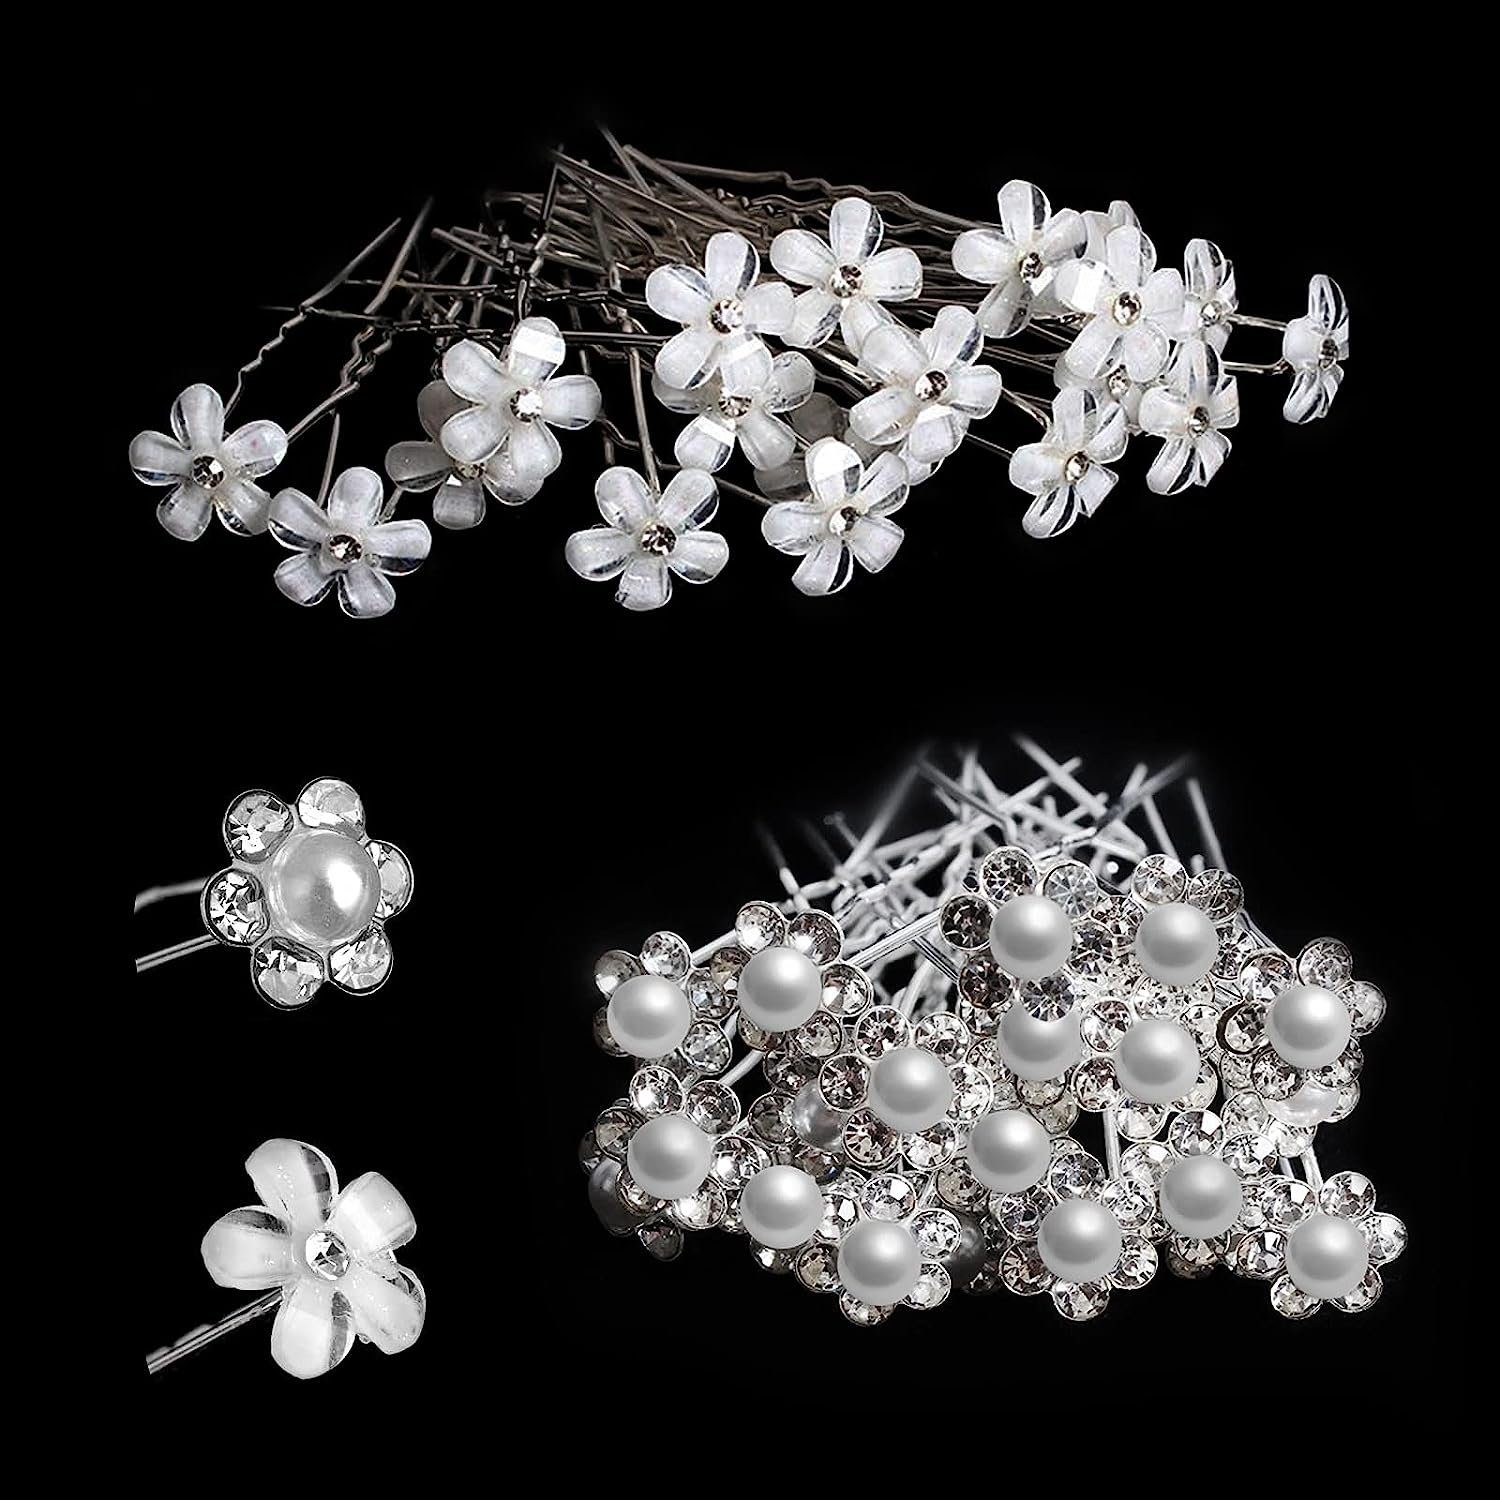 WaKuKa Diadem 40 Stück Hochzeit Haarschmuck U Braut Haarspangen Blume Perlen (40-tlg)